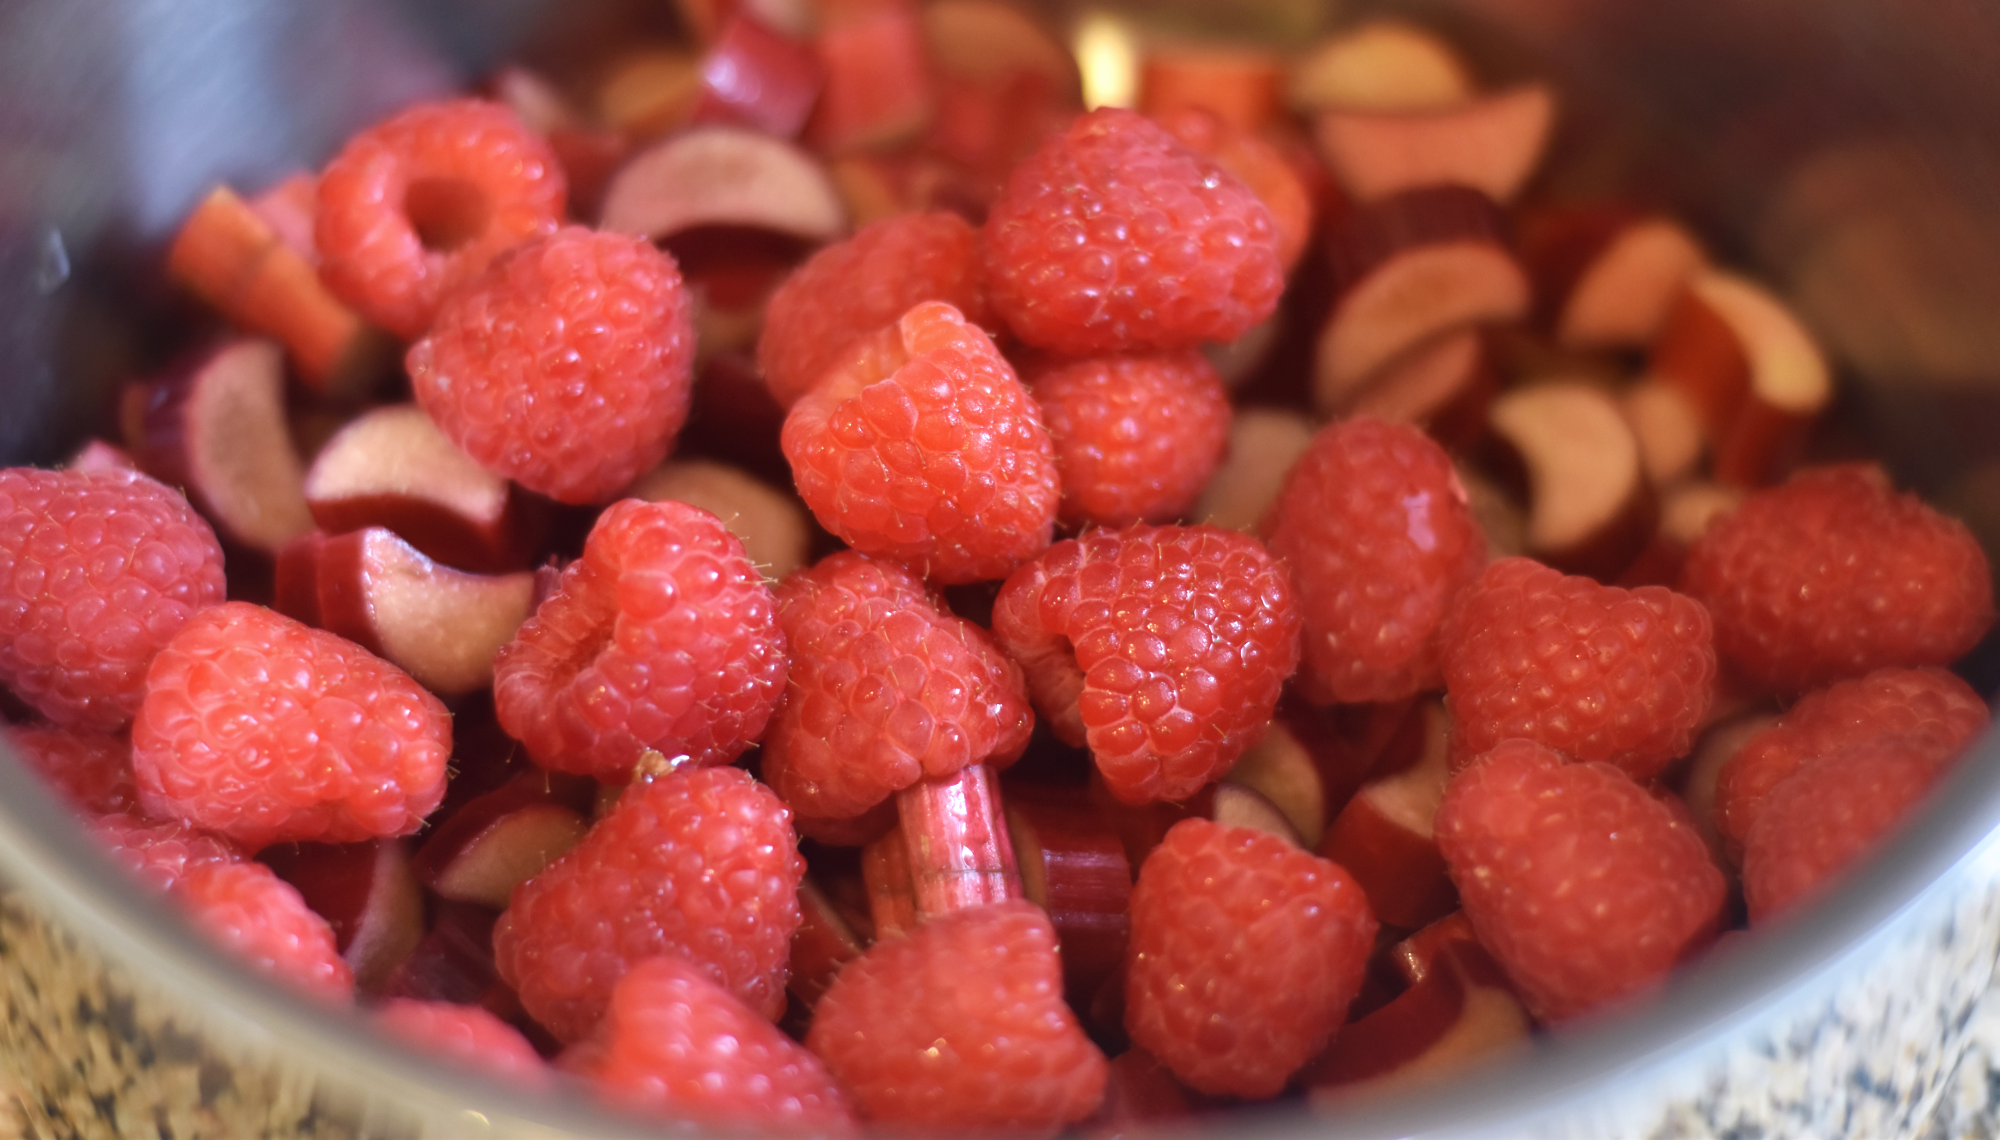 Raspberries and Rhubarb_v01.png